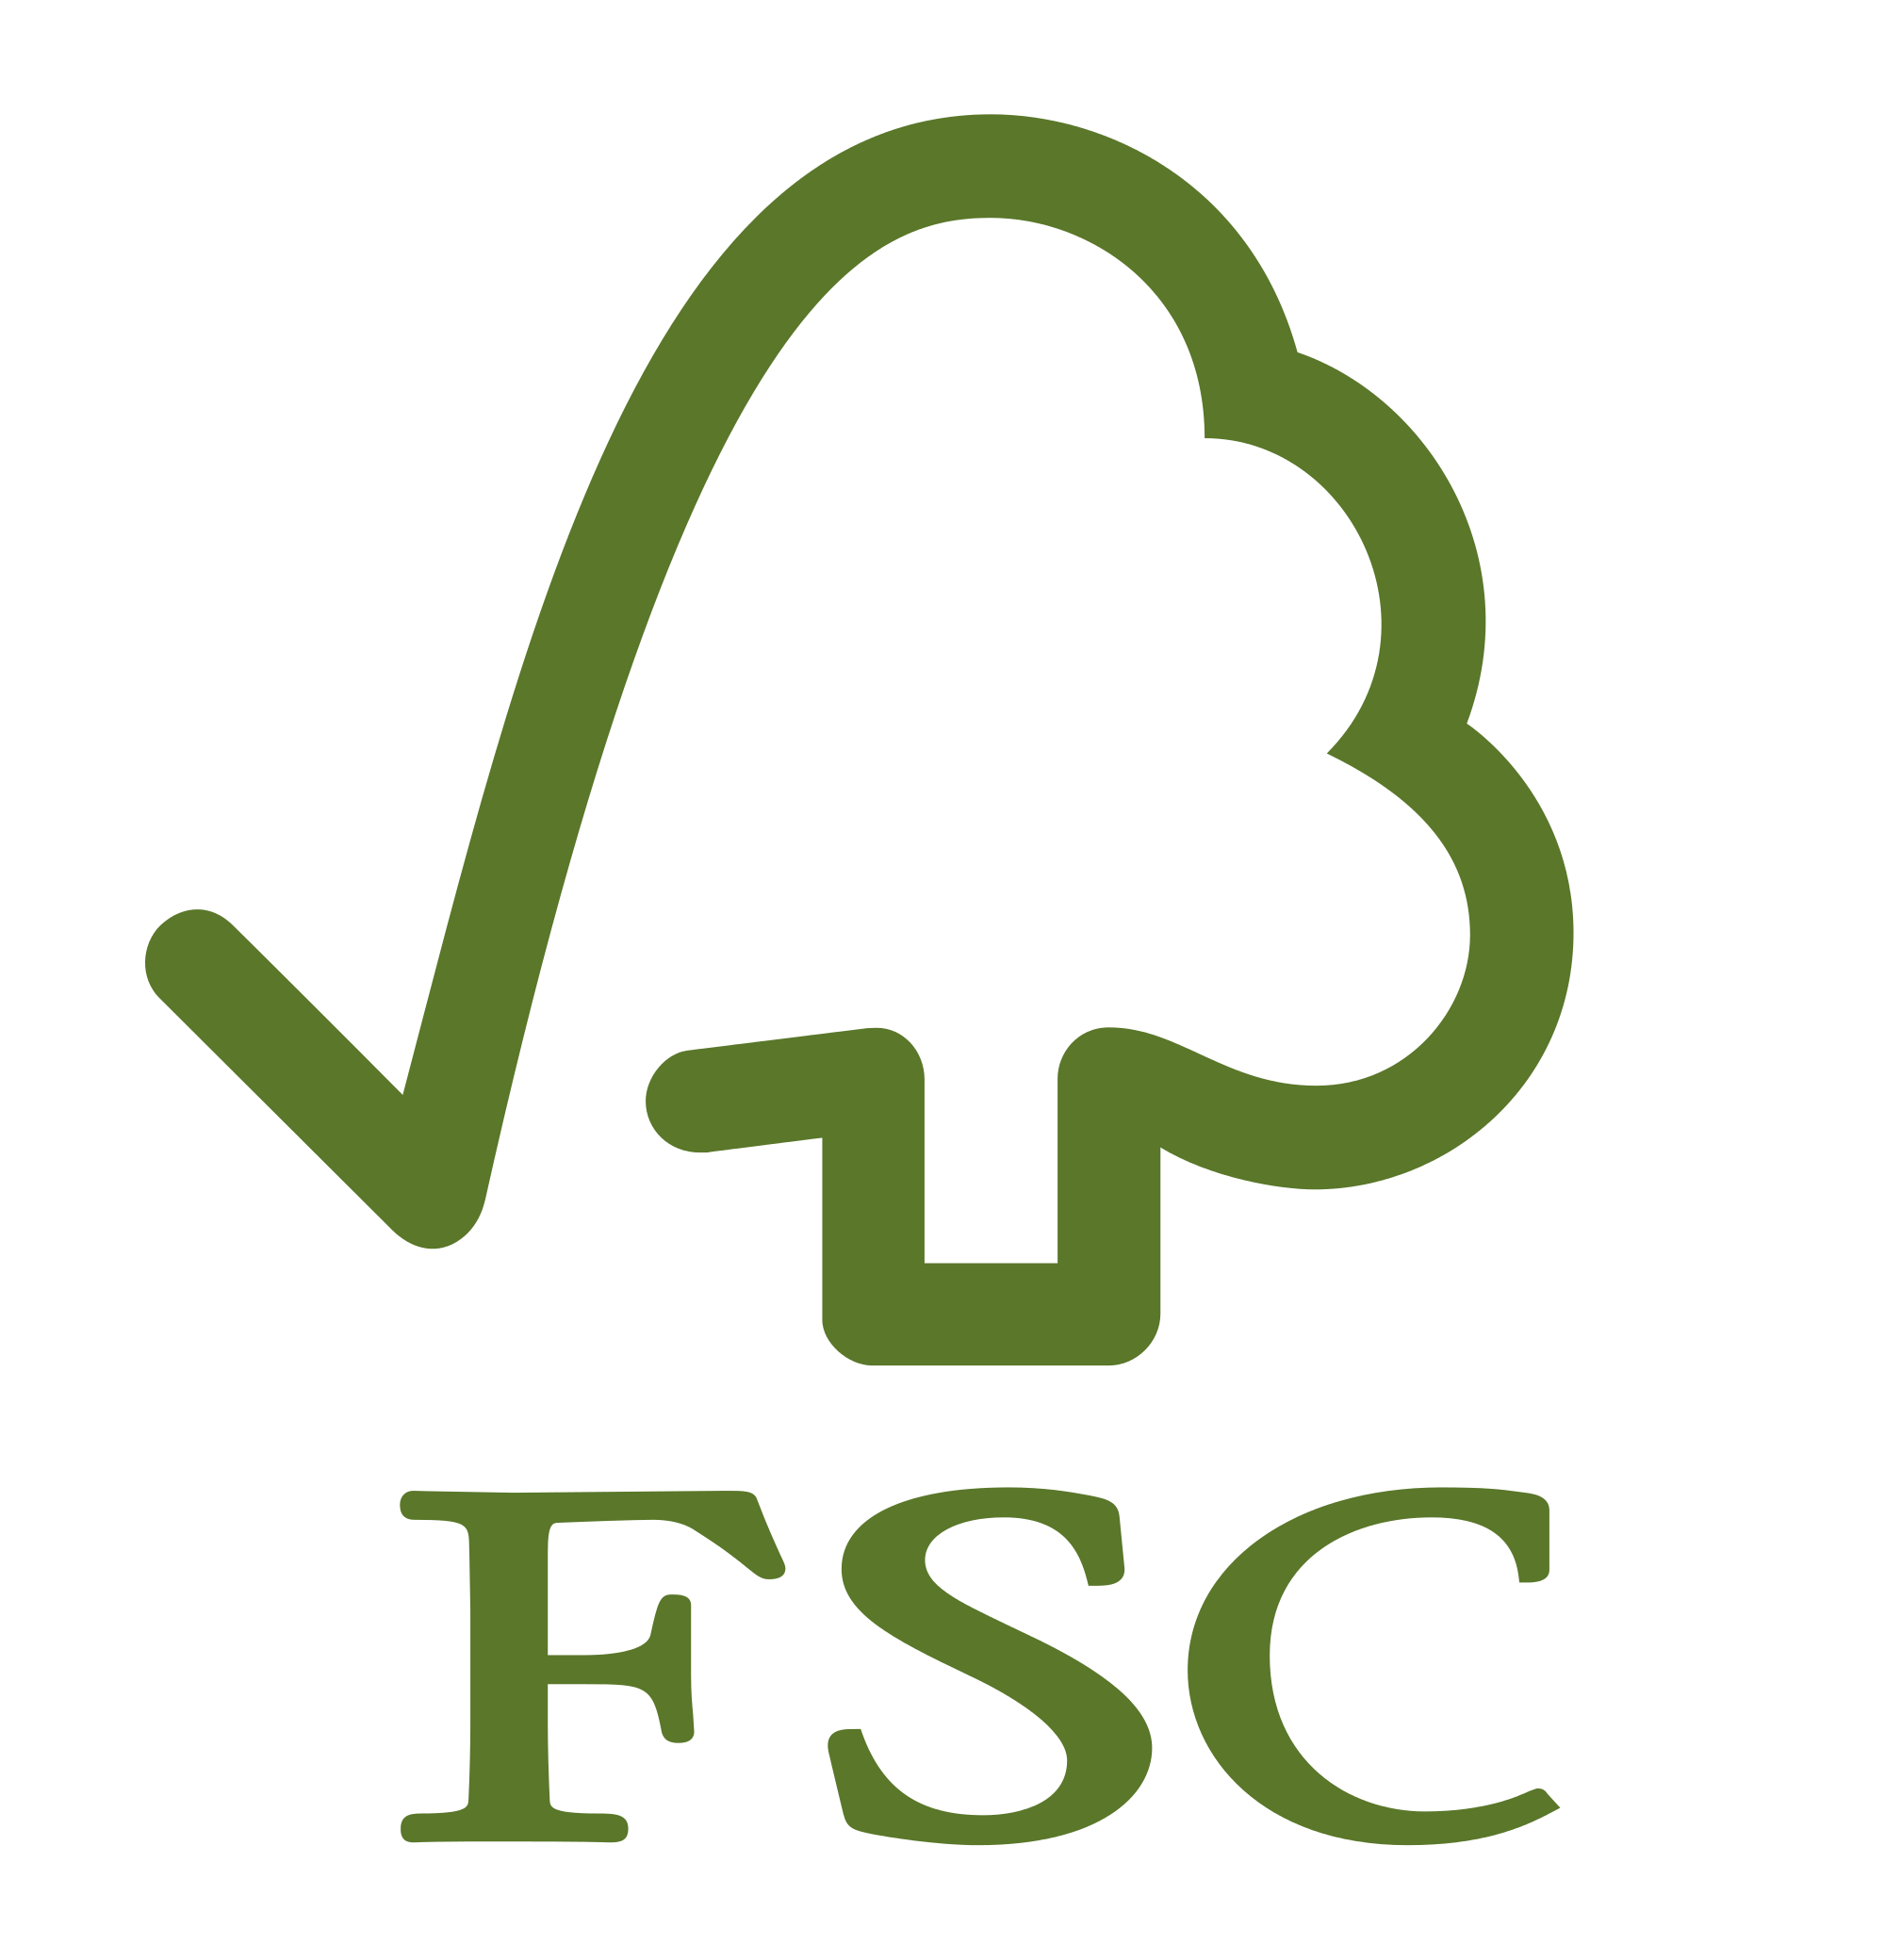 Il marchio della Forest Stewardship Council dentifica i prodotti contenenti legno proveniente da foreste gestite in maniera corretta e responsabile secondo rigorosi standard ambientali, sociali ed economici.